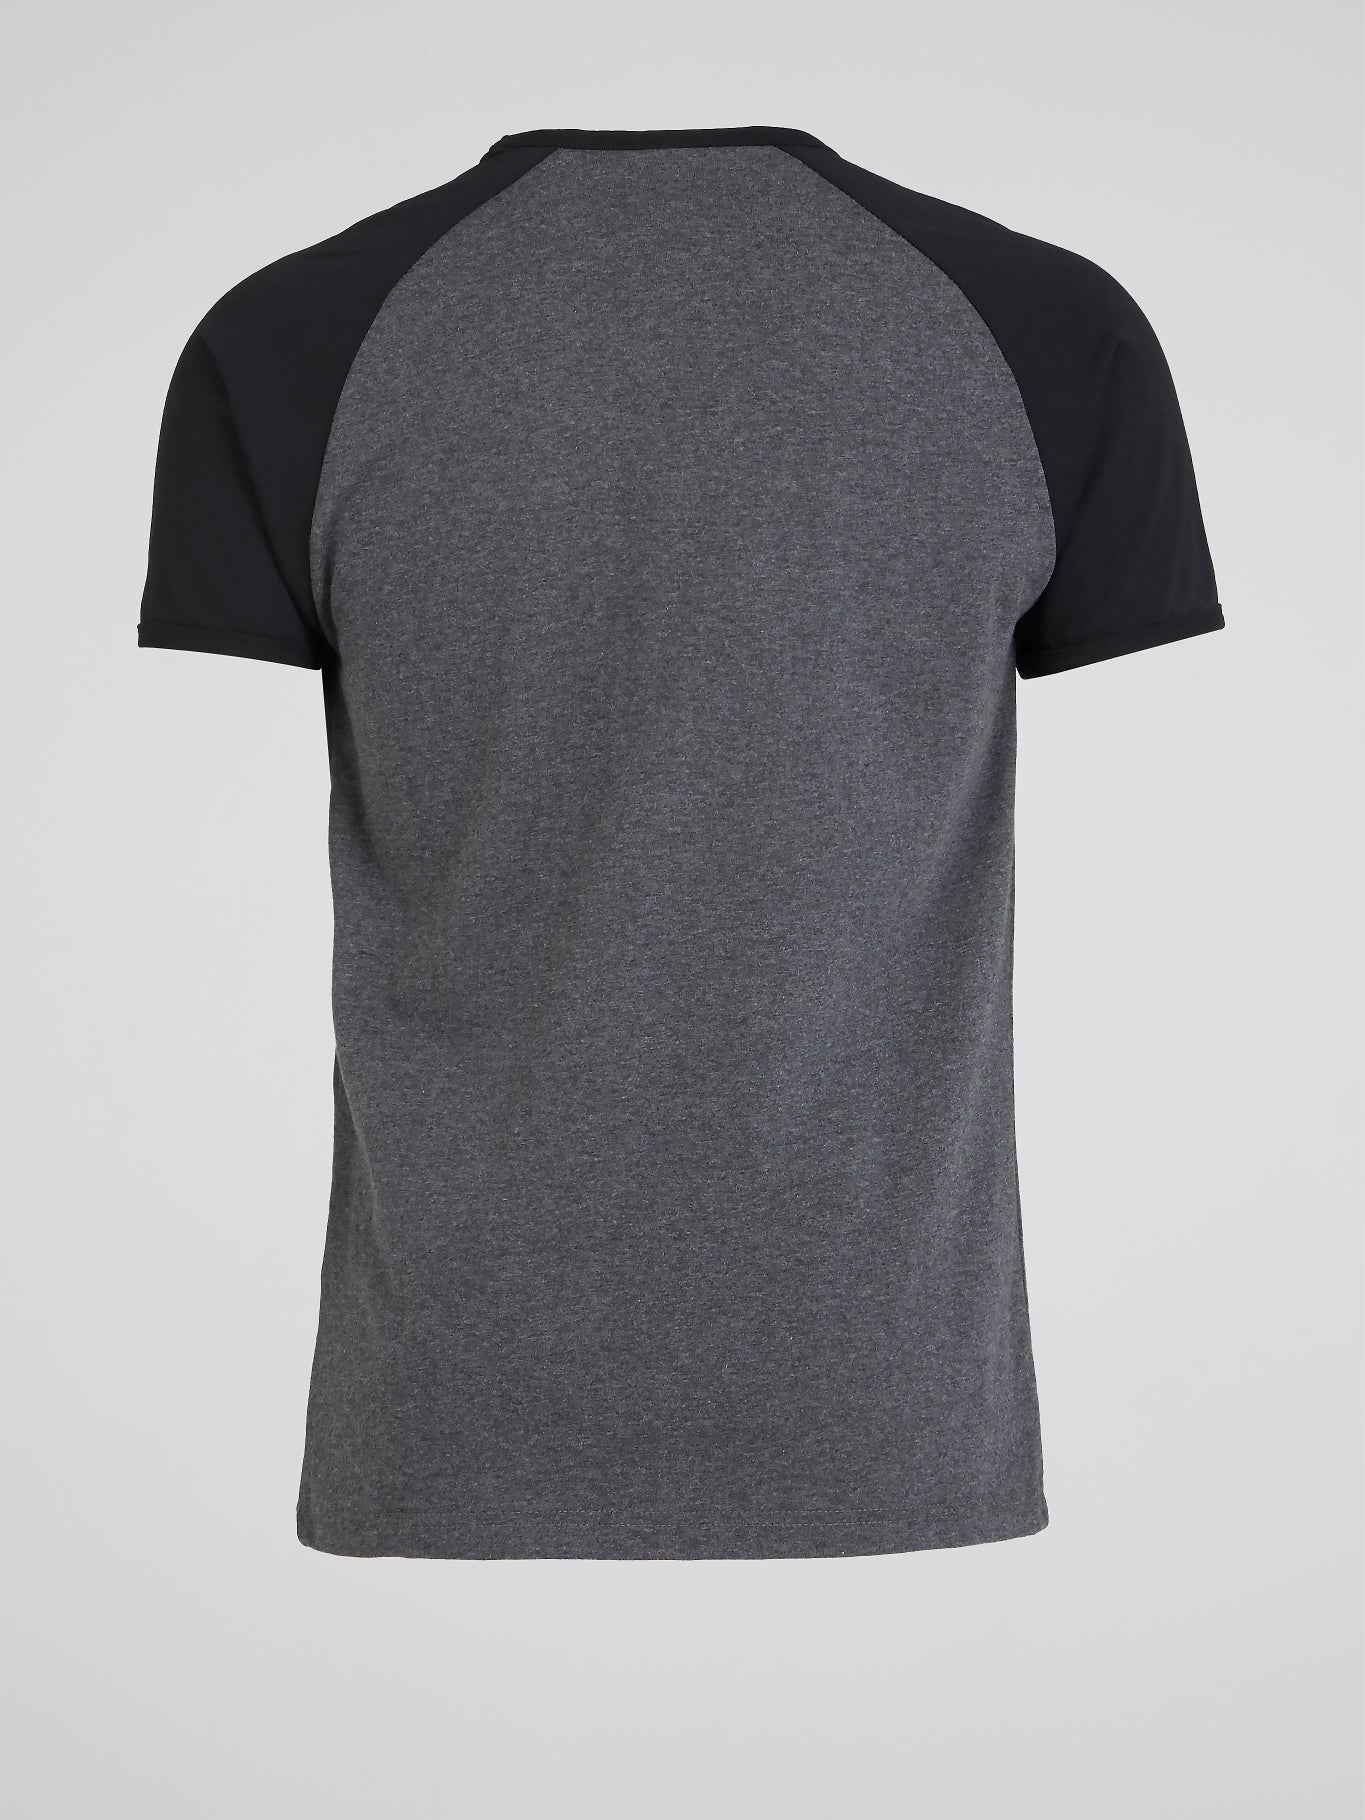 Piave Grey Raglan T-Shirt